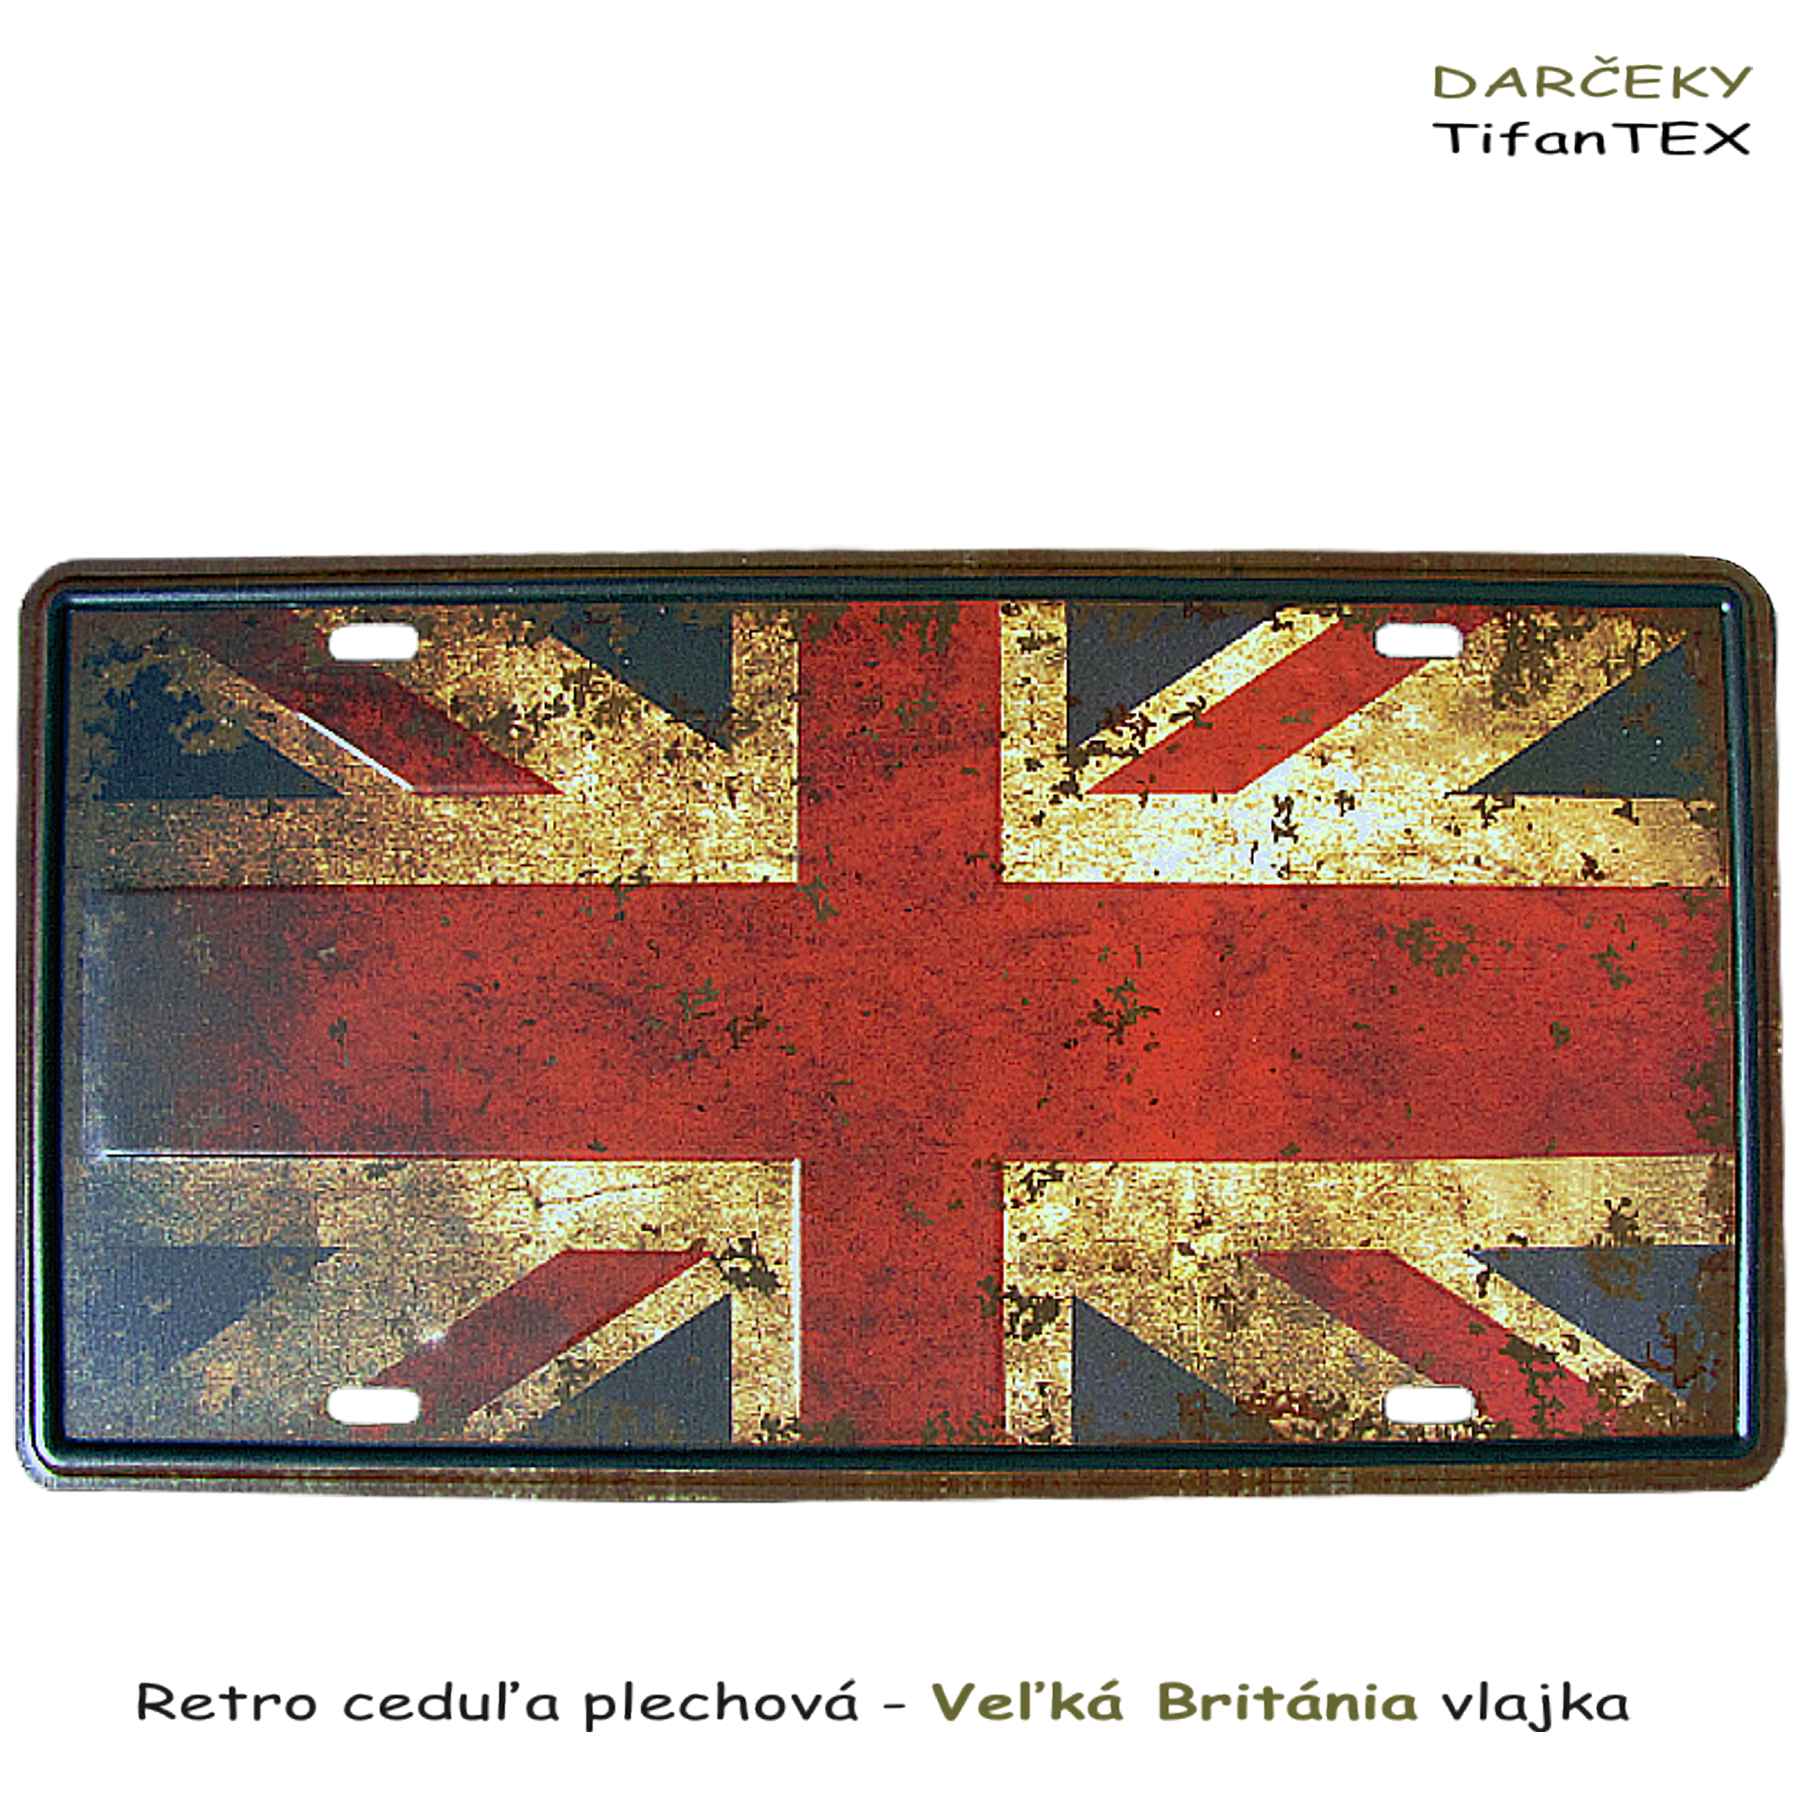 Dekoračná tabula RETRO Veľká Británia vlajka - veľkoobchod Tifantex